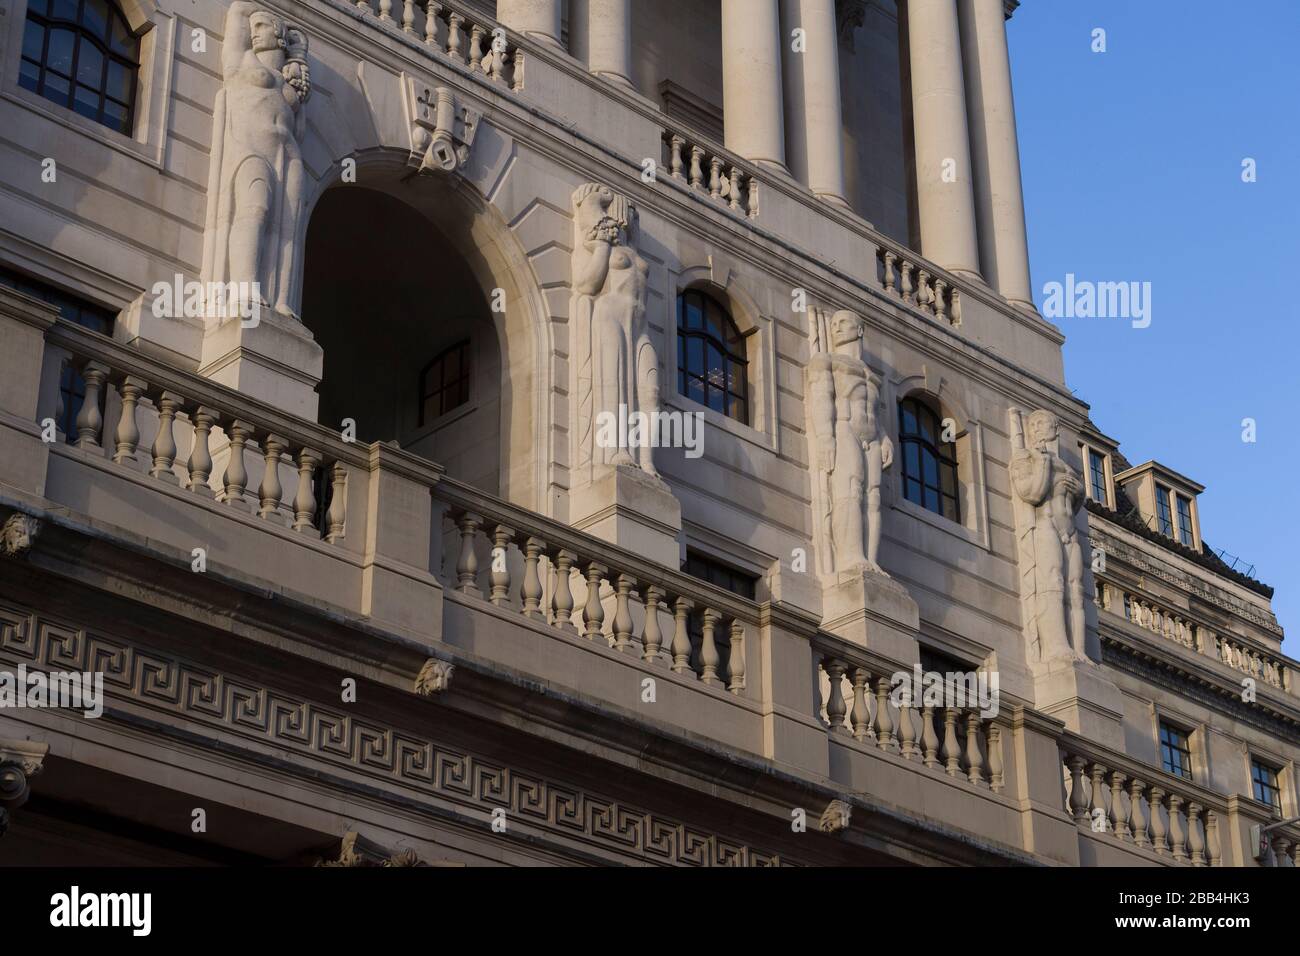 Bank of England è la banca centrale del Regno Unito. A volte conosciuta come la Vecchia Signora di Threadneedle Street. Threadneedle Street, Londra, Regno Unito. T Foto Stock